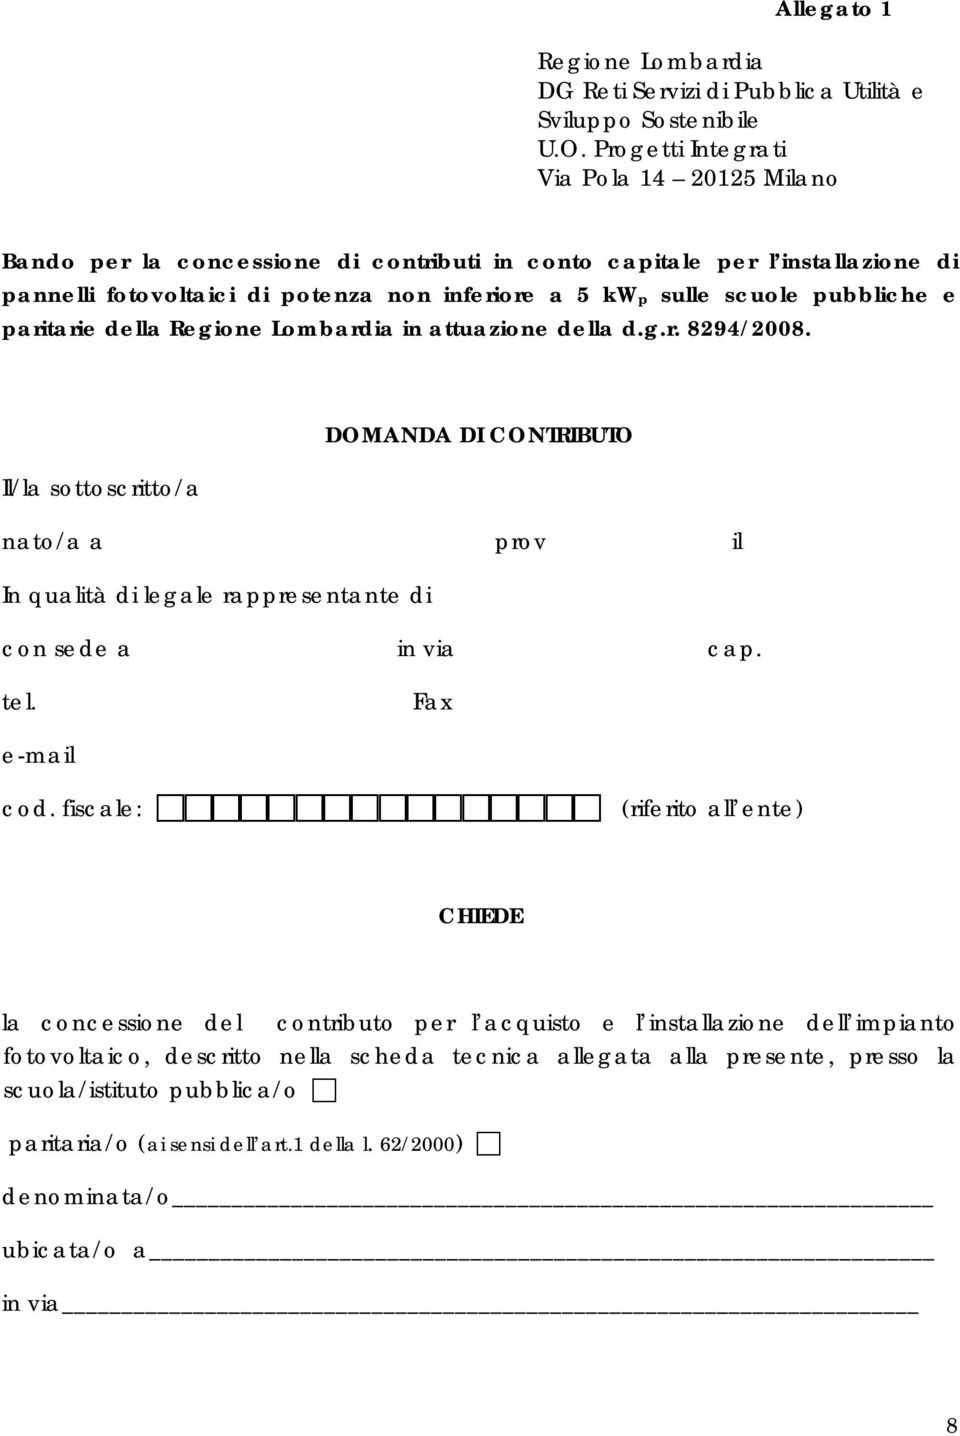 pubbliche e paritarie della Regione Lombardia in attuazione della d.g.r. 8294/2008.